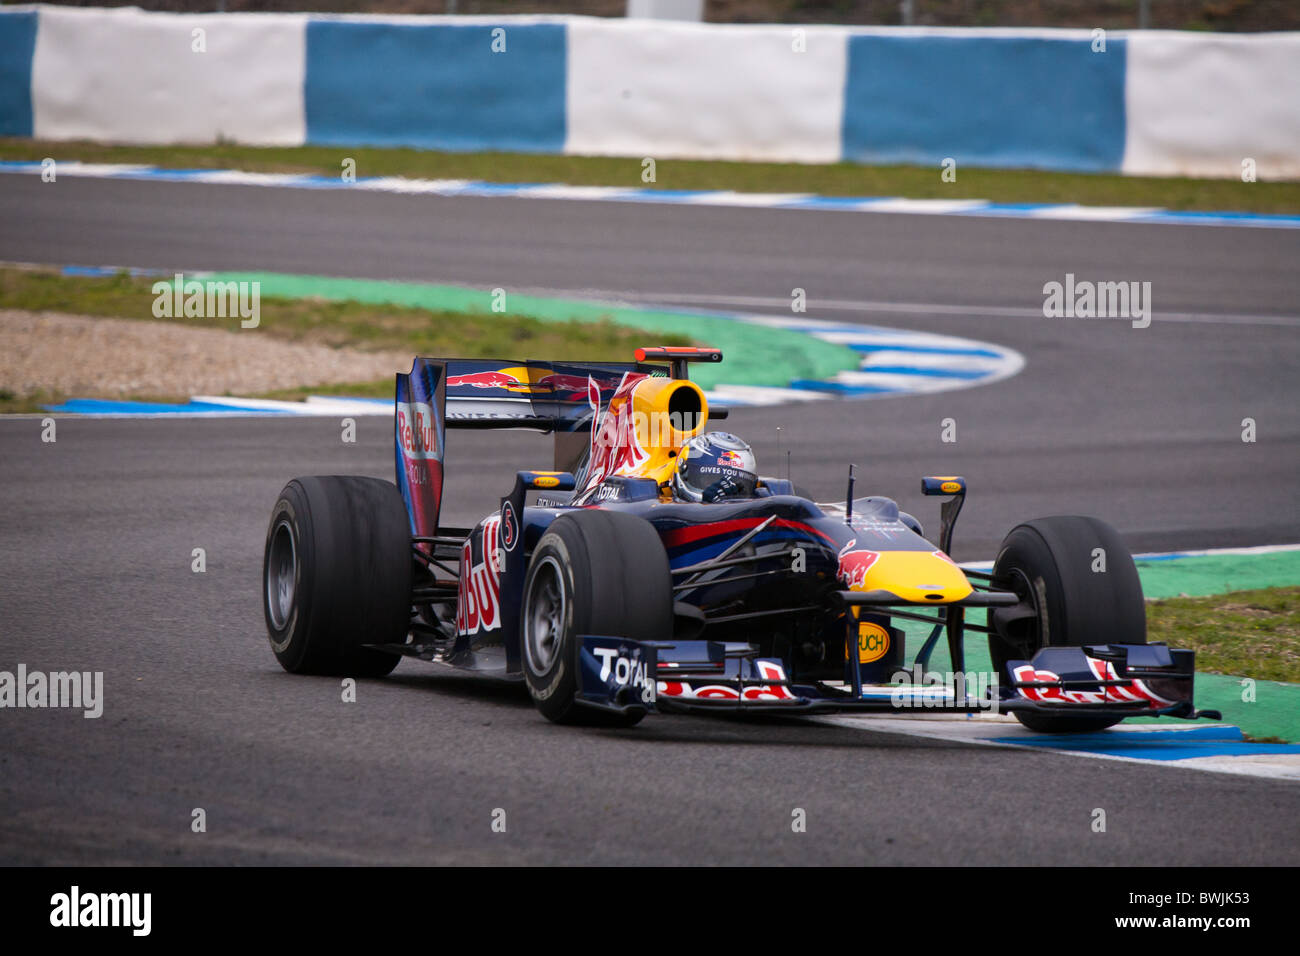 Sebastian Vettel al 2010 Jerez pratica nella sua Red Bull Renault, Formula 1 auto, lasciando la chicane. Foto Stock